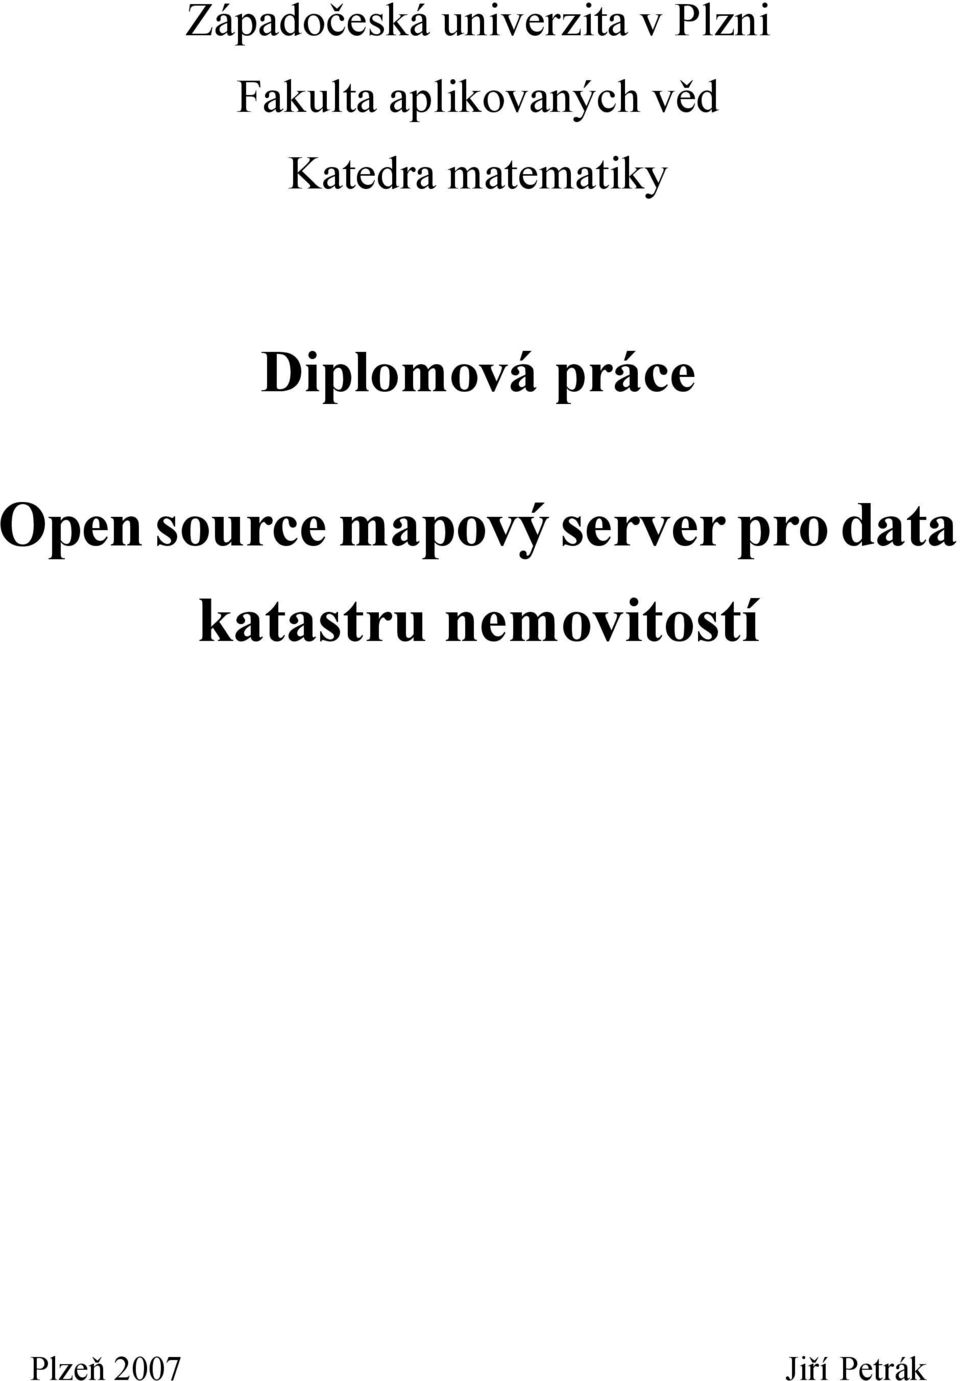 Diplomová práce Open source mapový server